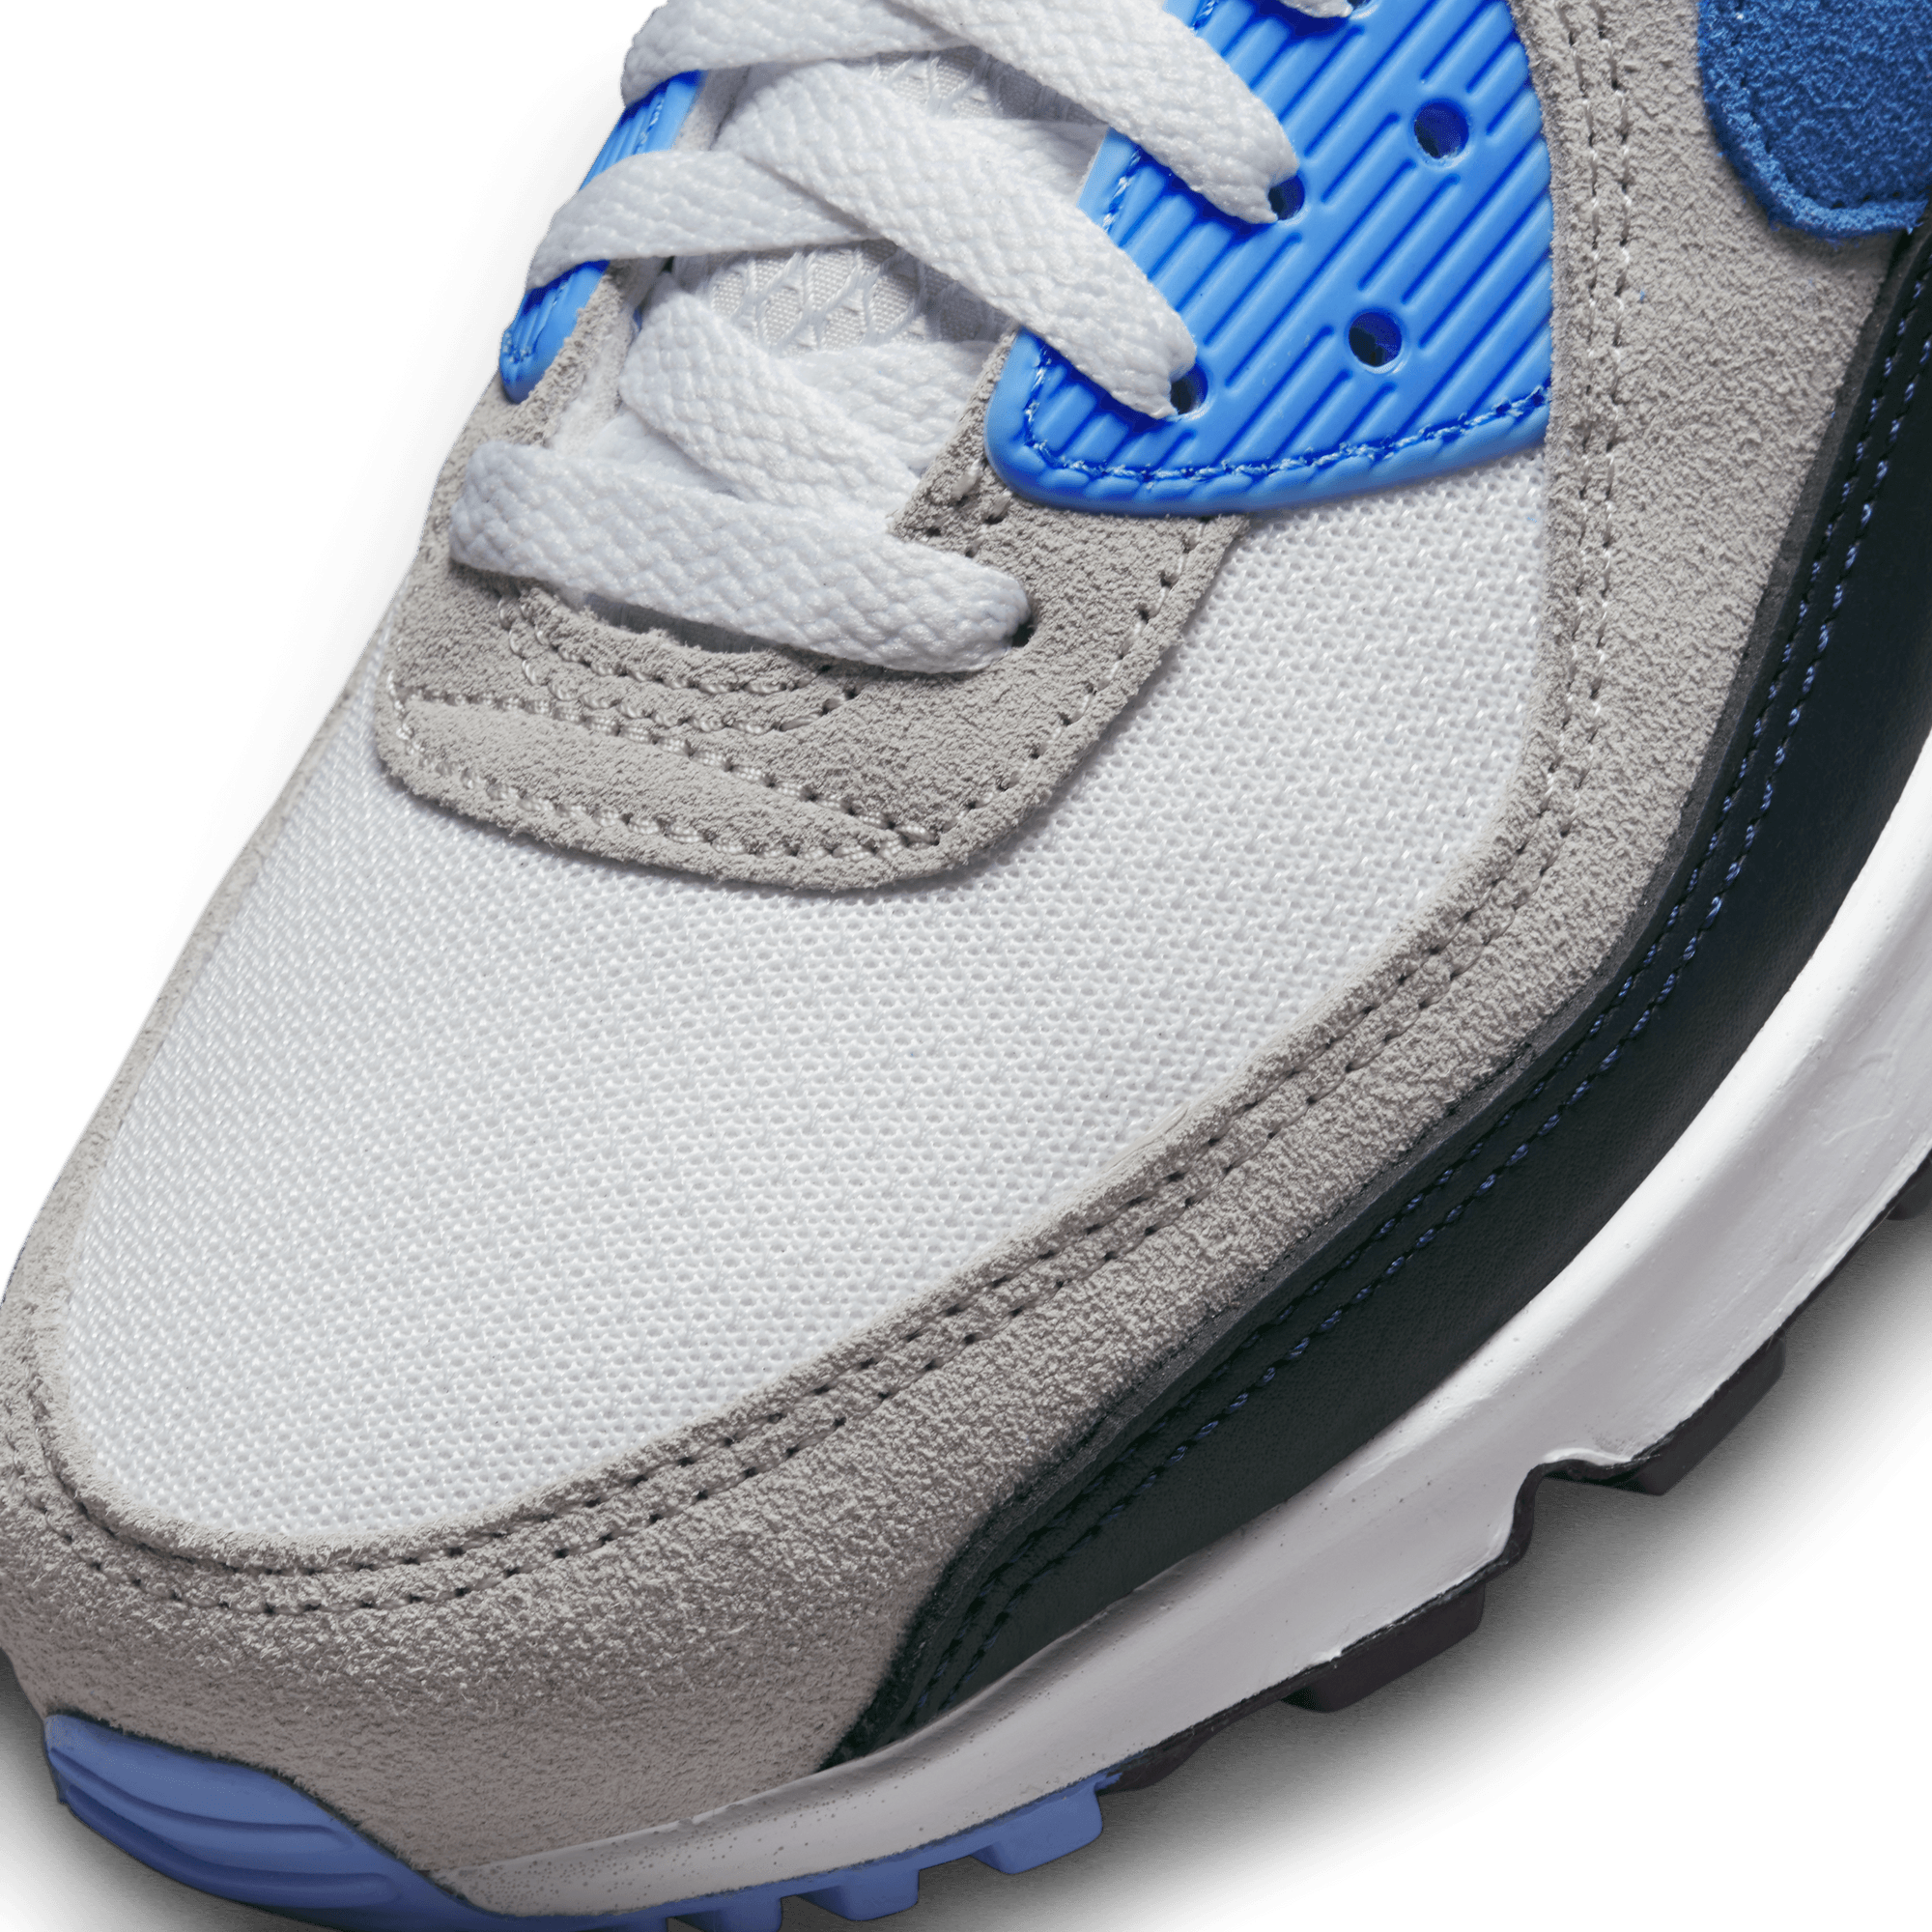 Nike Air Max 90 – Nohble